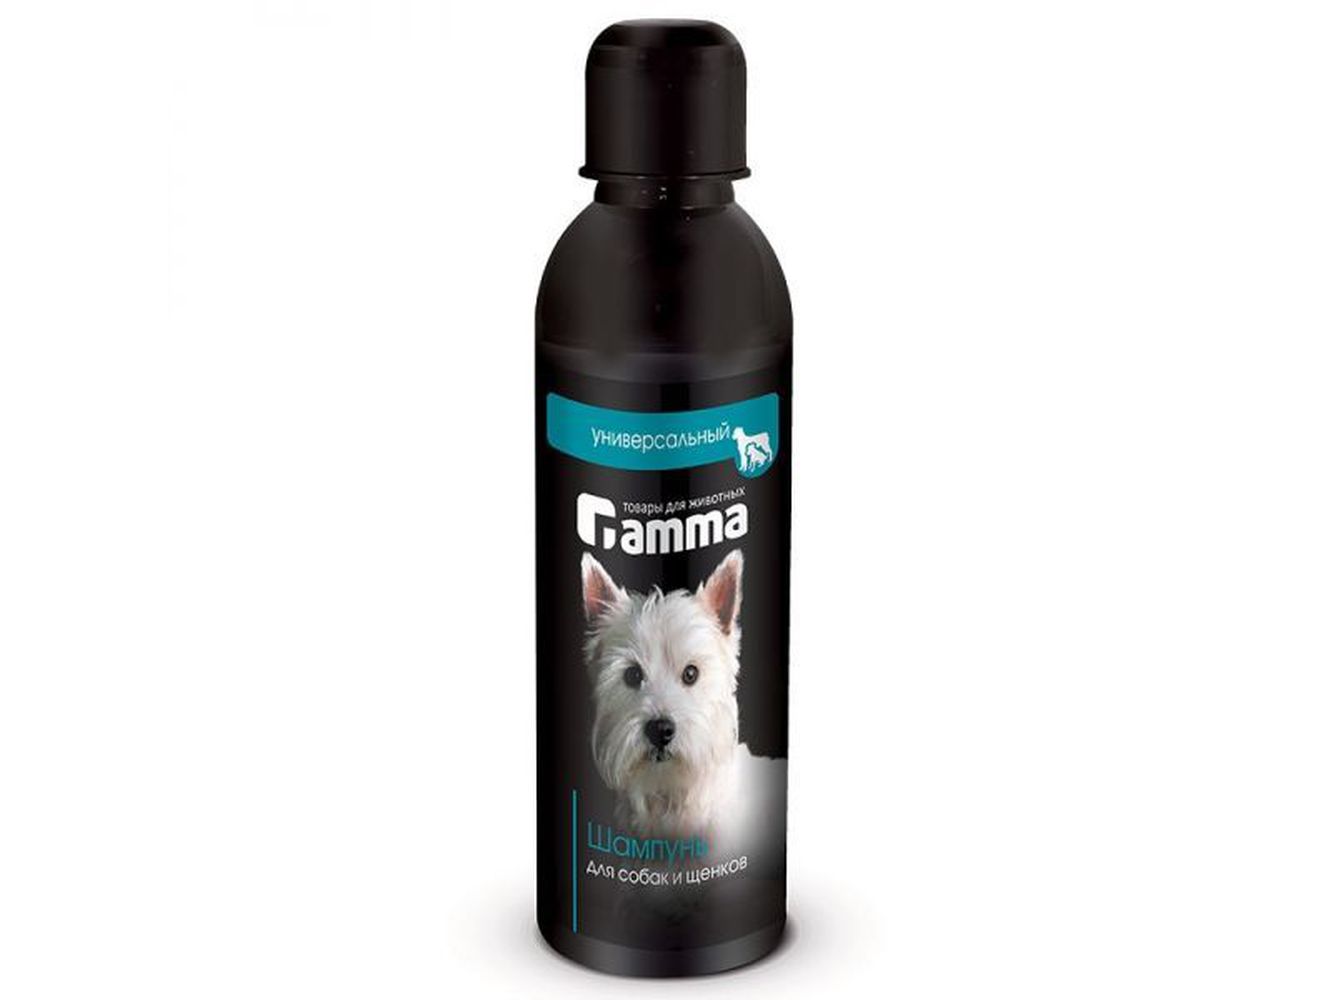 Фото Gamma шампунь универсальный для собак и щенков, 250 мл 